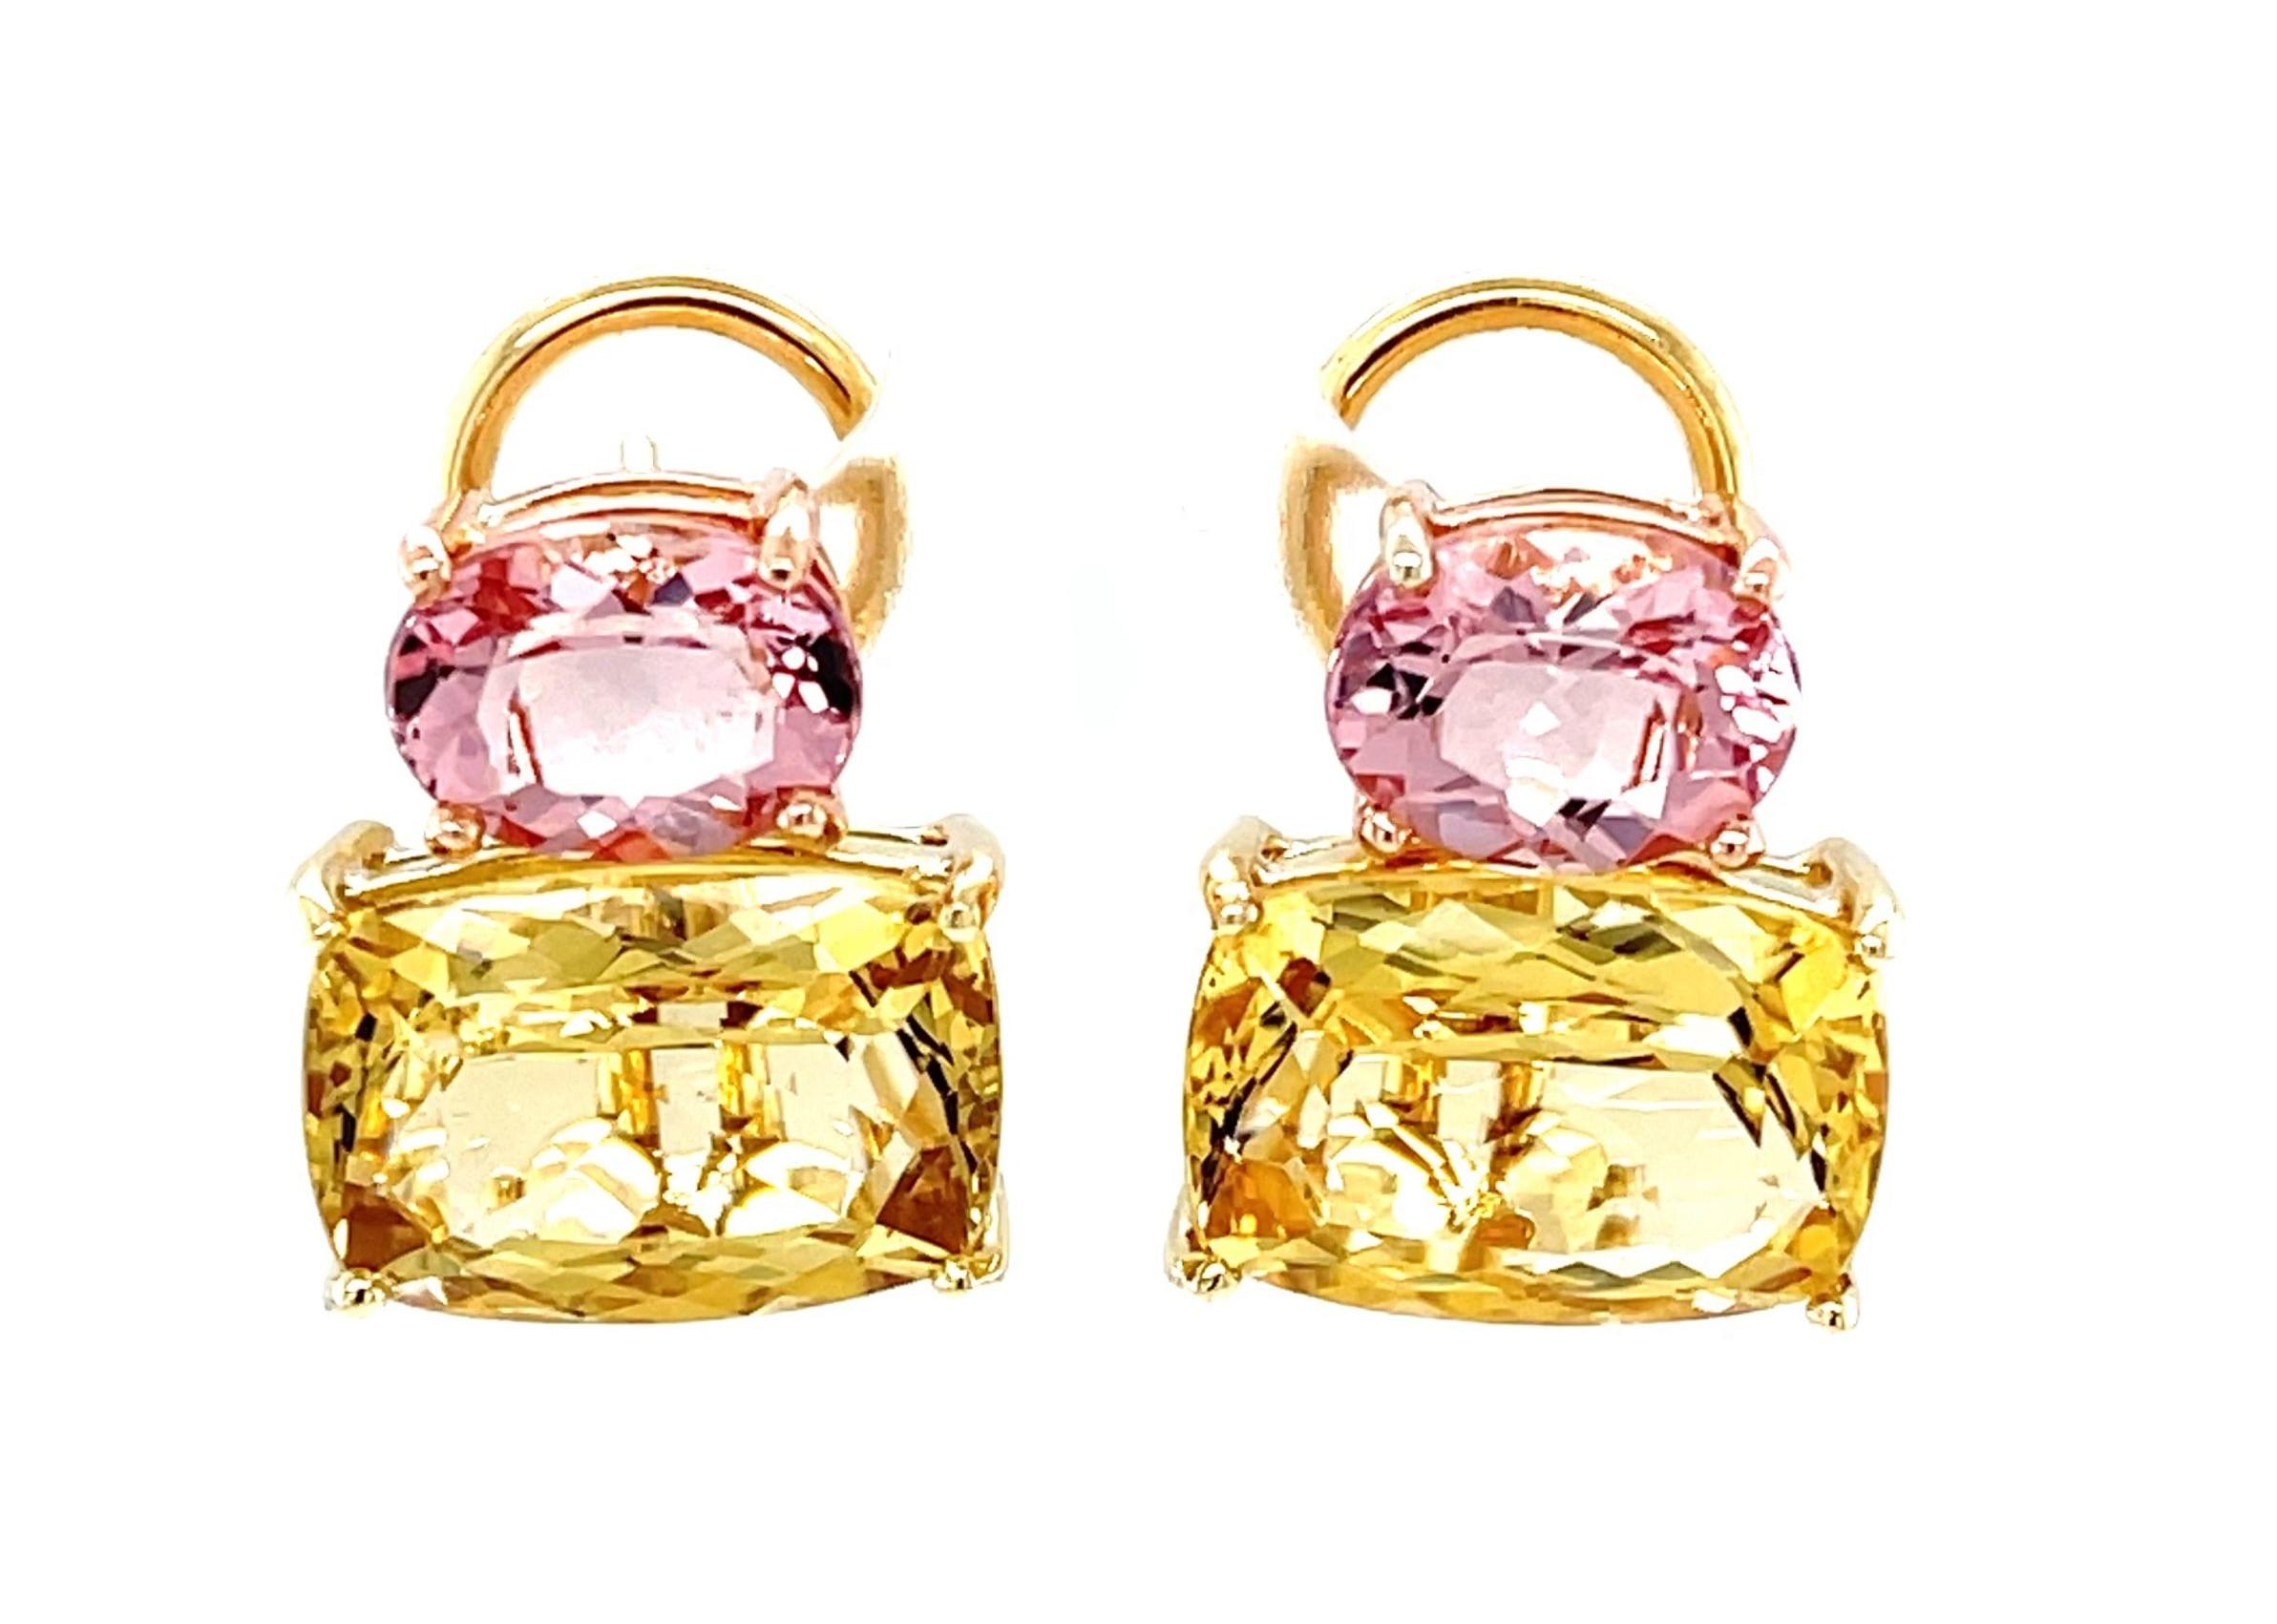 Diese einzigartigen Edelsteinohrringe sind ein einzigartiges Paar aus einem leuchtenden goldenen Beryll und einem funkelnden rosa Morganit, gefasst in 18 Karat Gelb- und Roségold! Diese ungewöhnlichen Edelsteine sind farbenfrohe Varietäten des